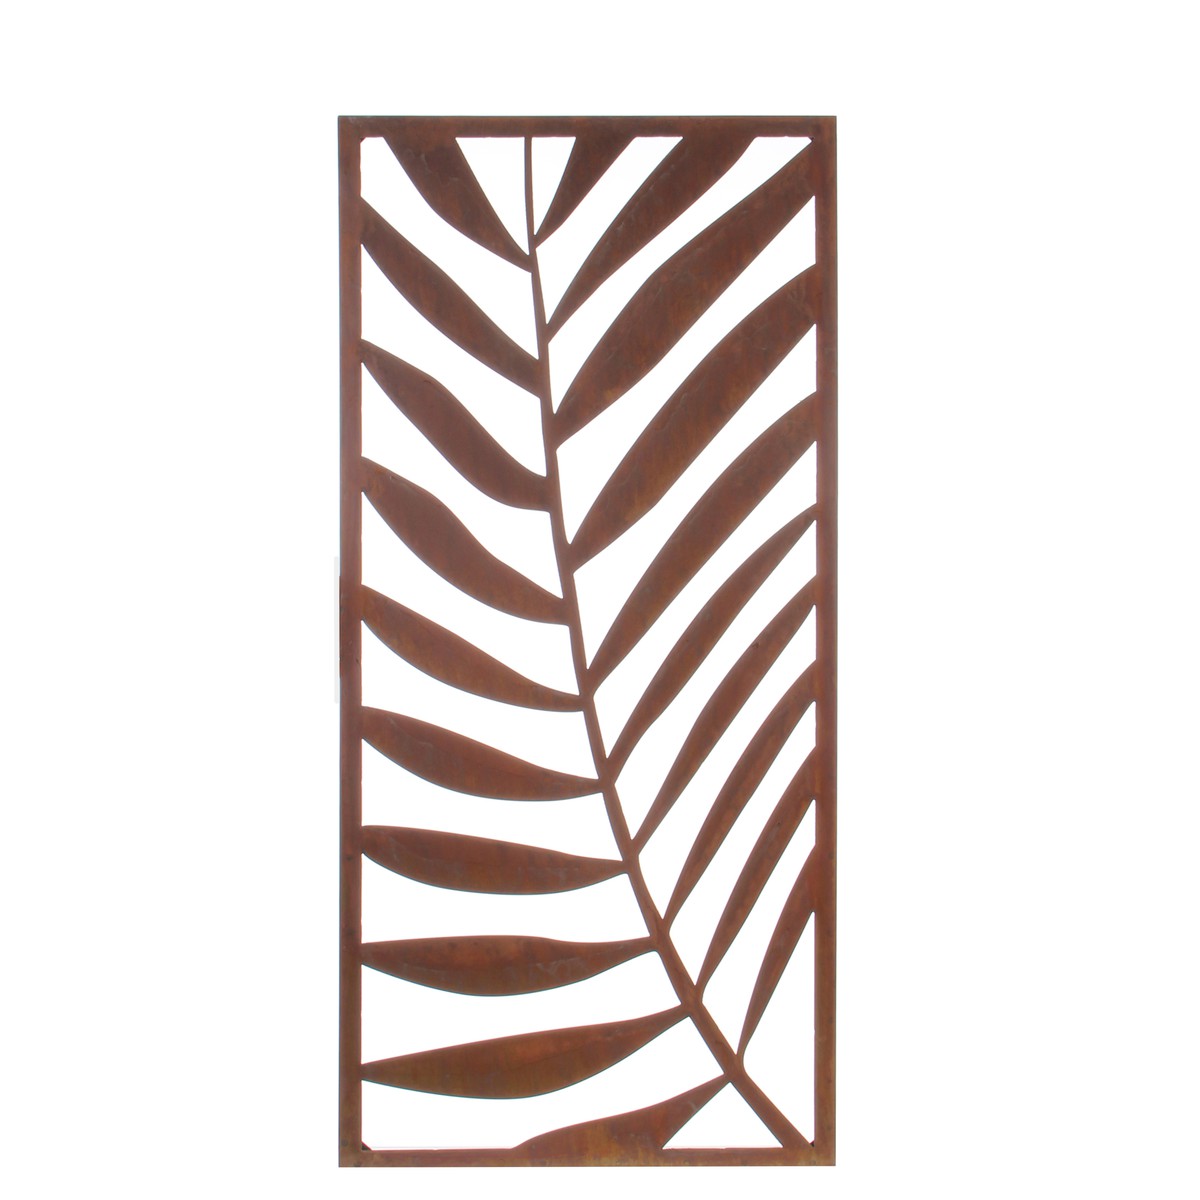   Decoration mure palm rouille Rect  118x54cm